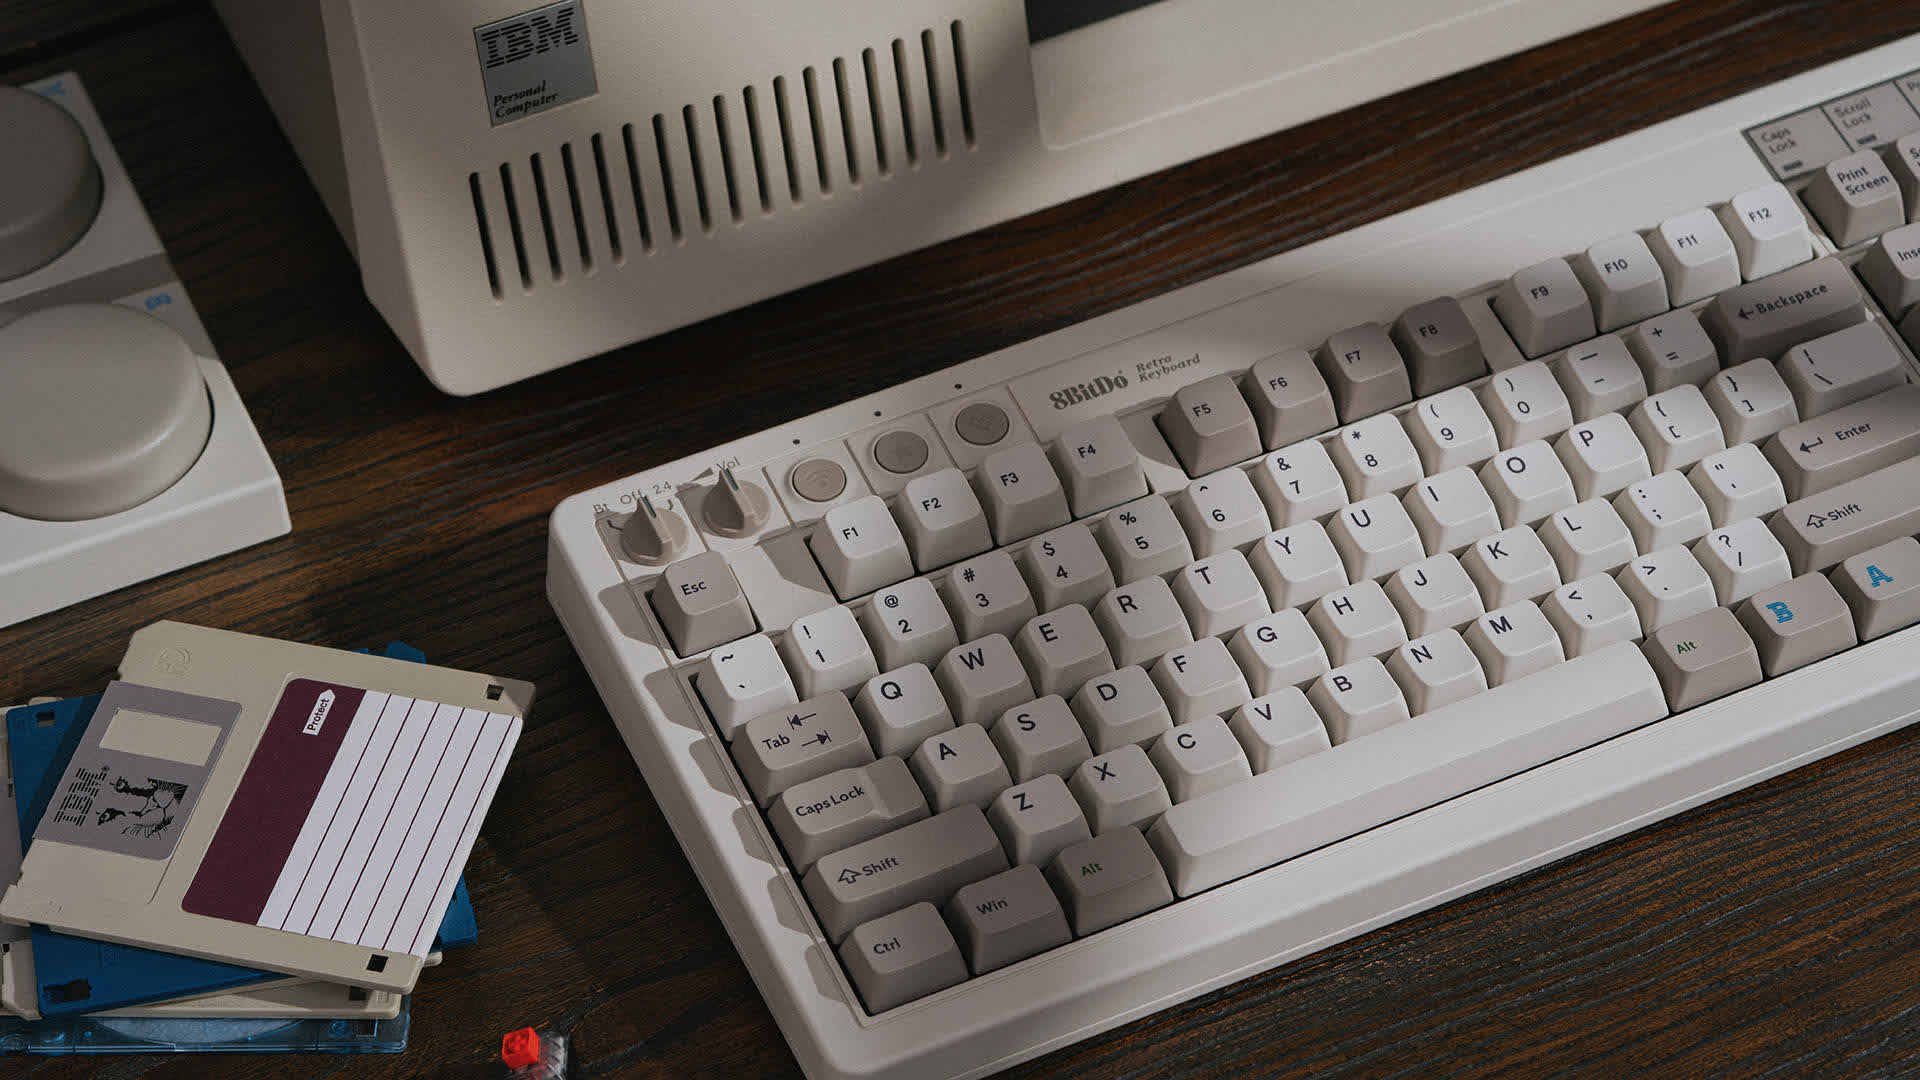 8BitDo anuncia el teclado mecánico retro inspirado en IBM M, el teclado a juego se vende por separado